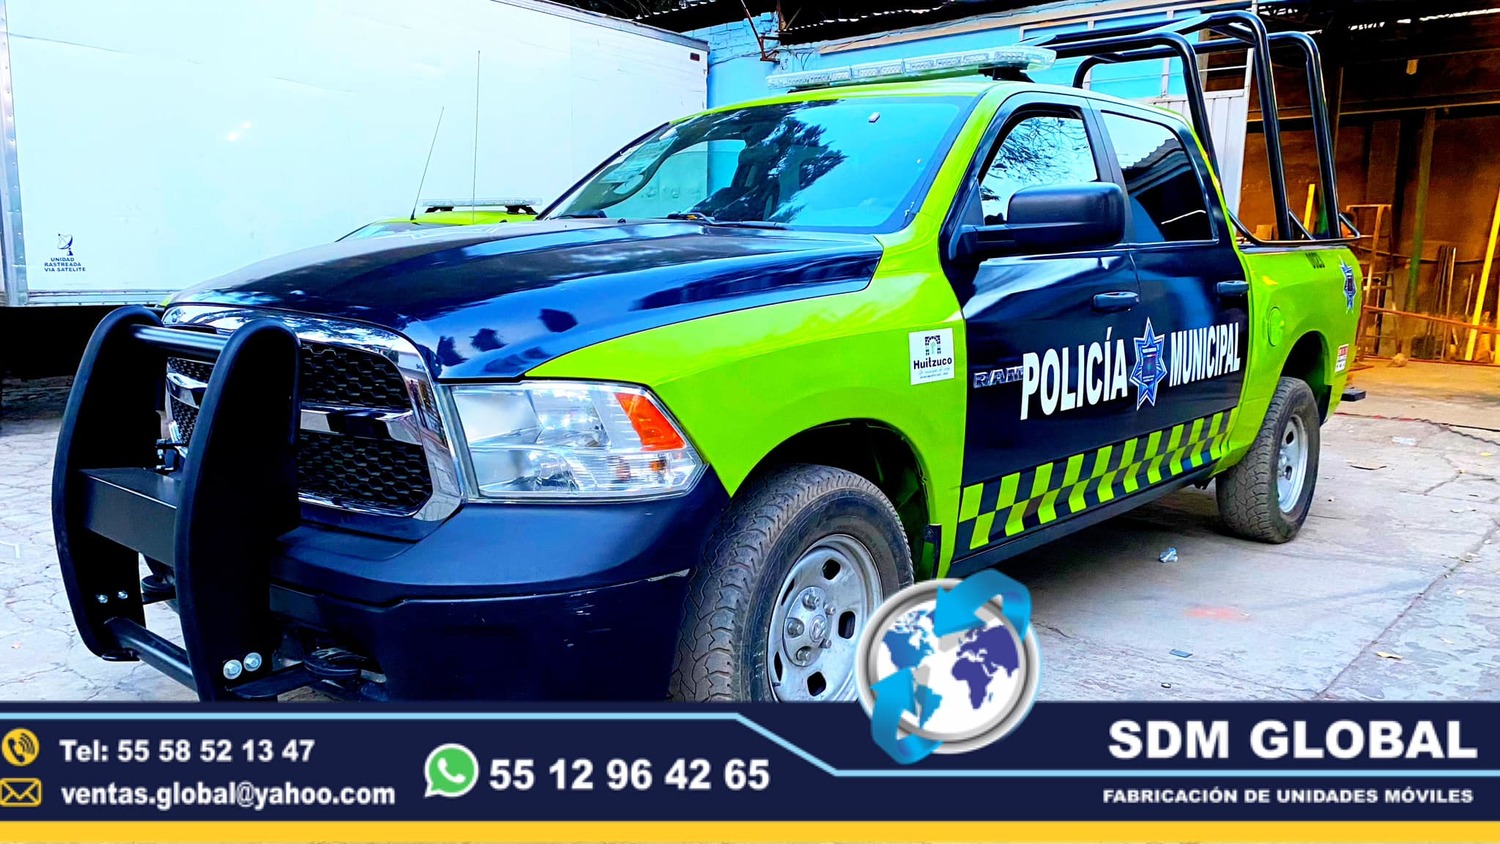 <span style="font-weight: bold;">Rotulacion o balizamiento de Patrullas, Policia Privada Unidad de Rescate  </span><br>